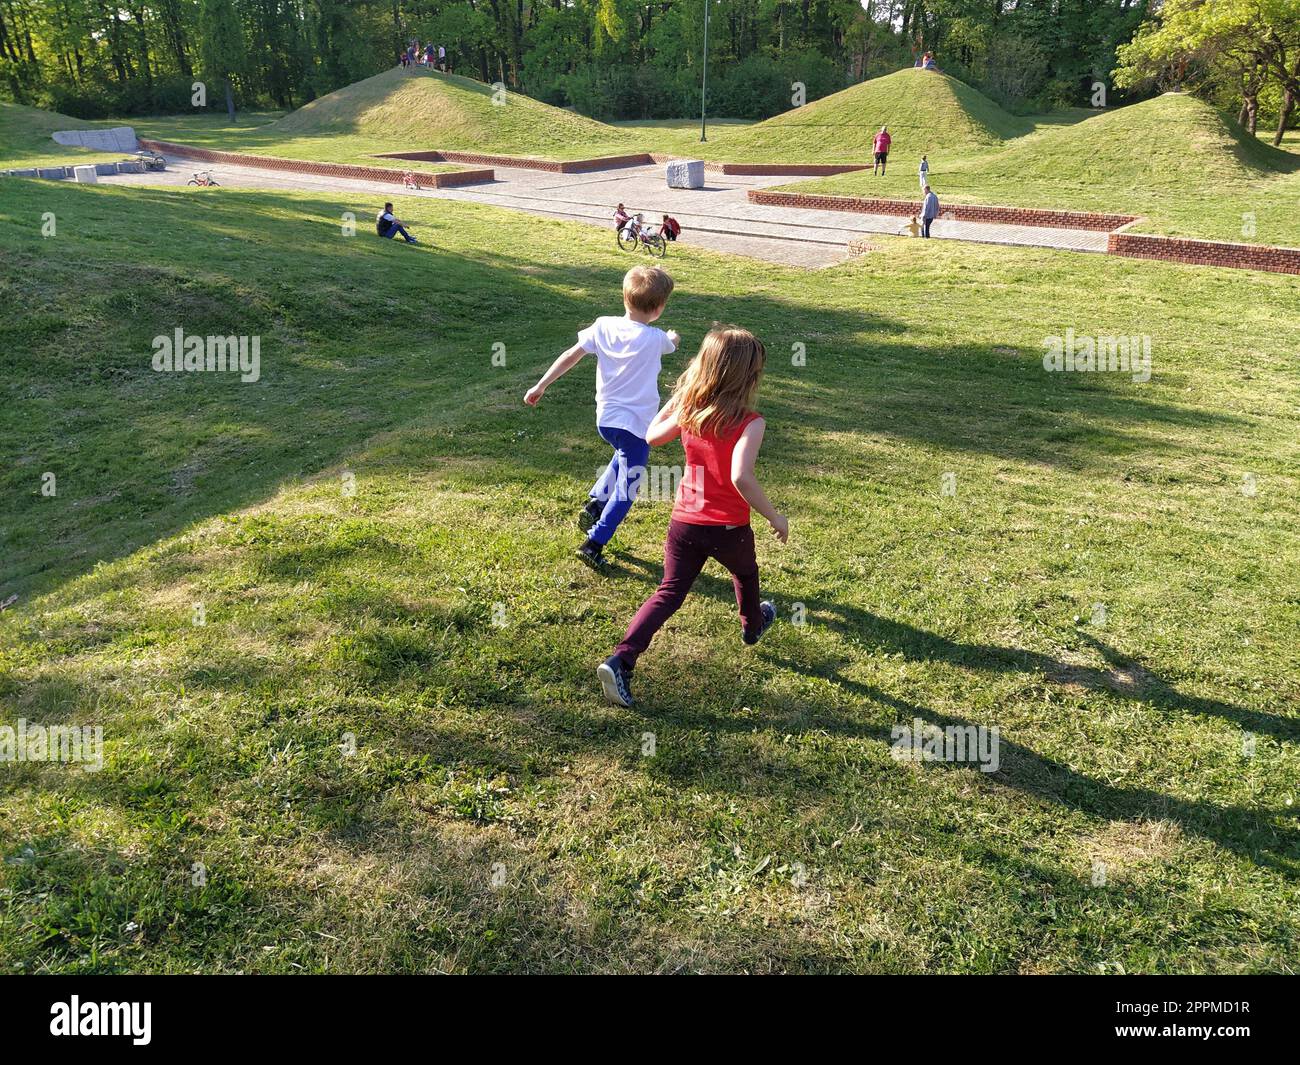 Sremska Mitrovica, Serbia - 24 aprile 2020- i bambini corrono nel parco. Un ragazzo con una T-shirt bianca e pantaloni blu. Ragazza con canotta rossa e pantaloni. Prato o campo verde. La gente cammina in un parco cittadino Foto Stock